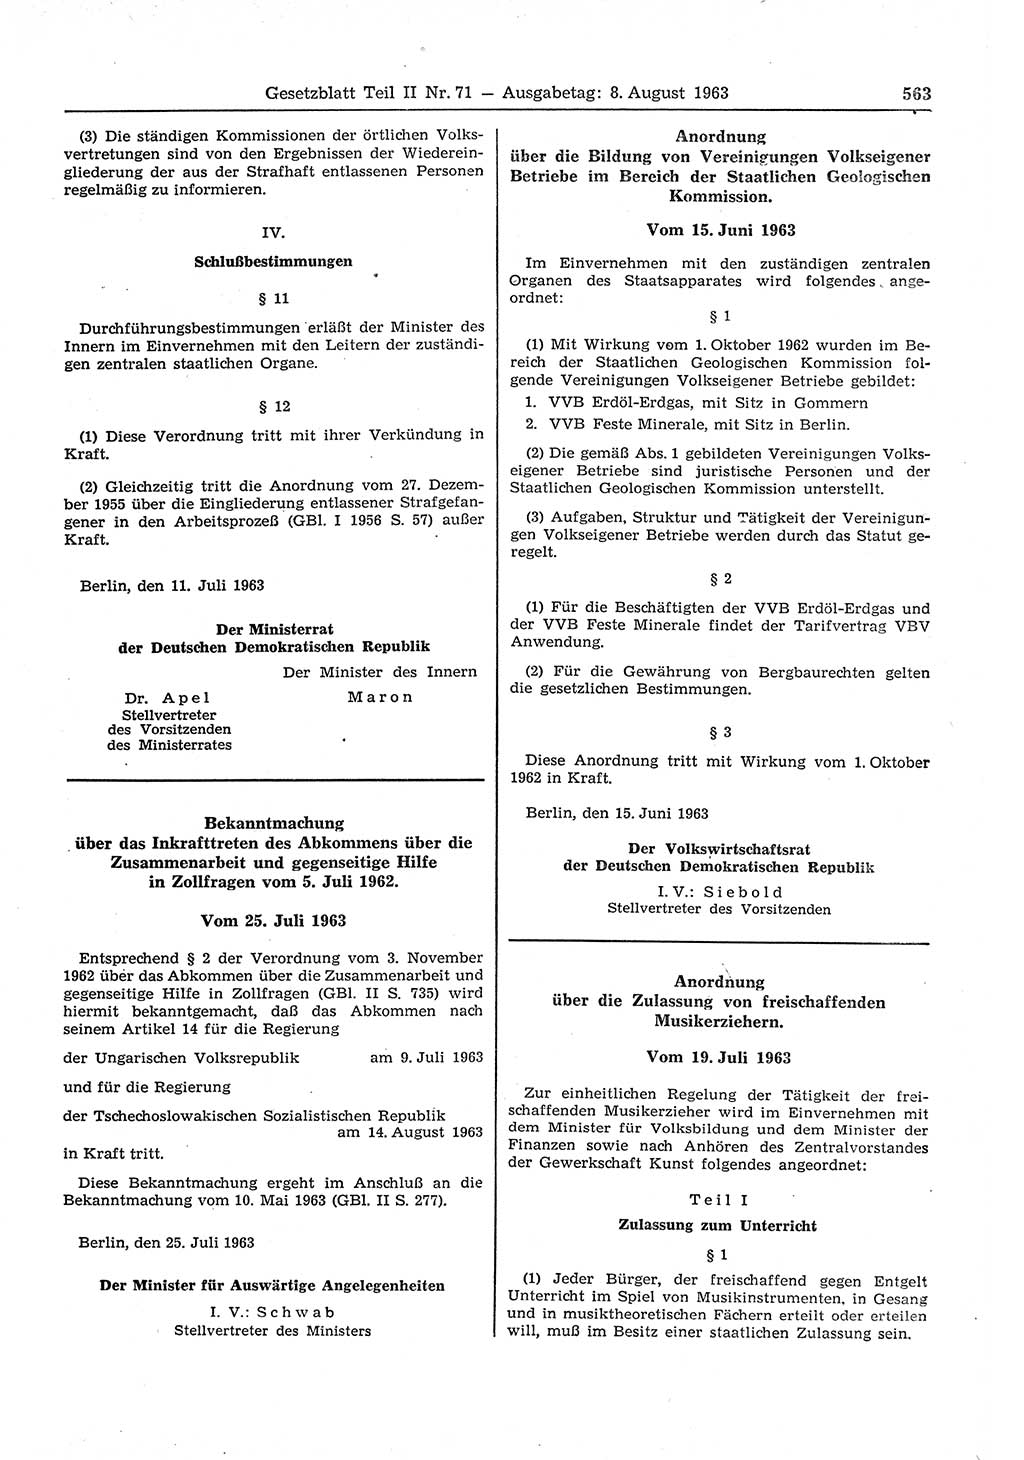 Gesetzblatt (GBl.) der Deutschen Demokratischen Republik (DDR) Teil ⅠⅠ 1963, Seite 563 (GBl. DDR ⅠⅠ 1963, S. 563)